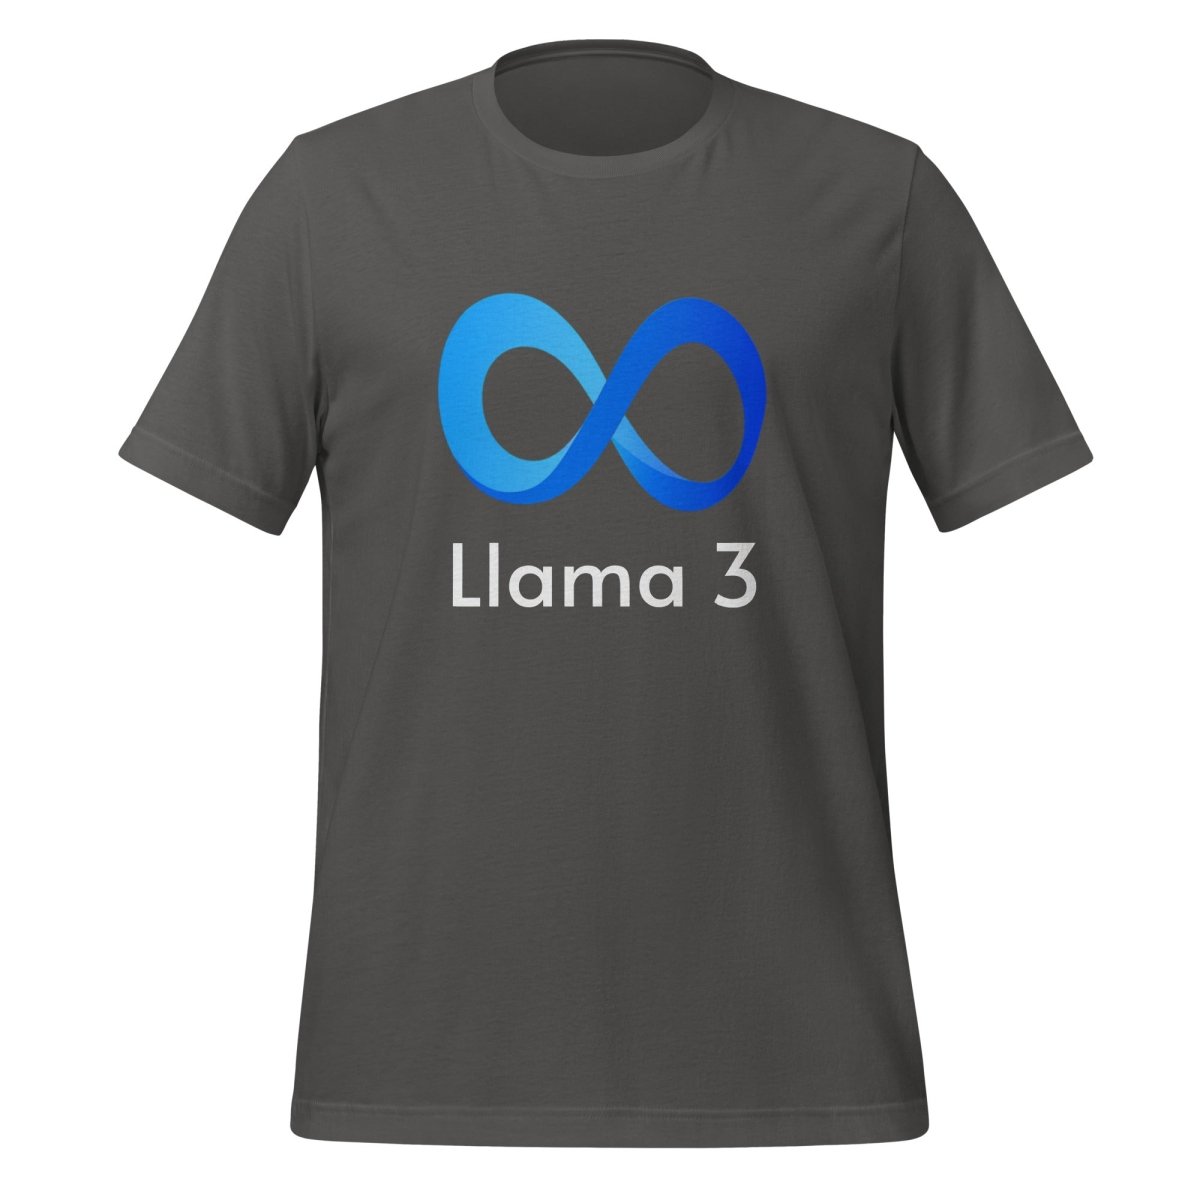 Llama 3 T - Shirt (unisex) - Asphalt - AI Store